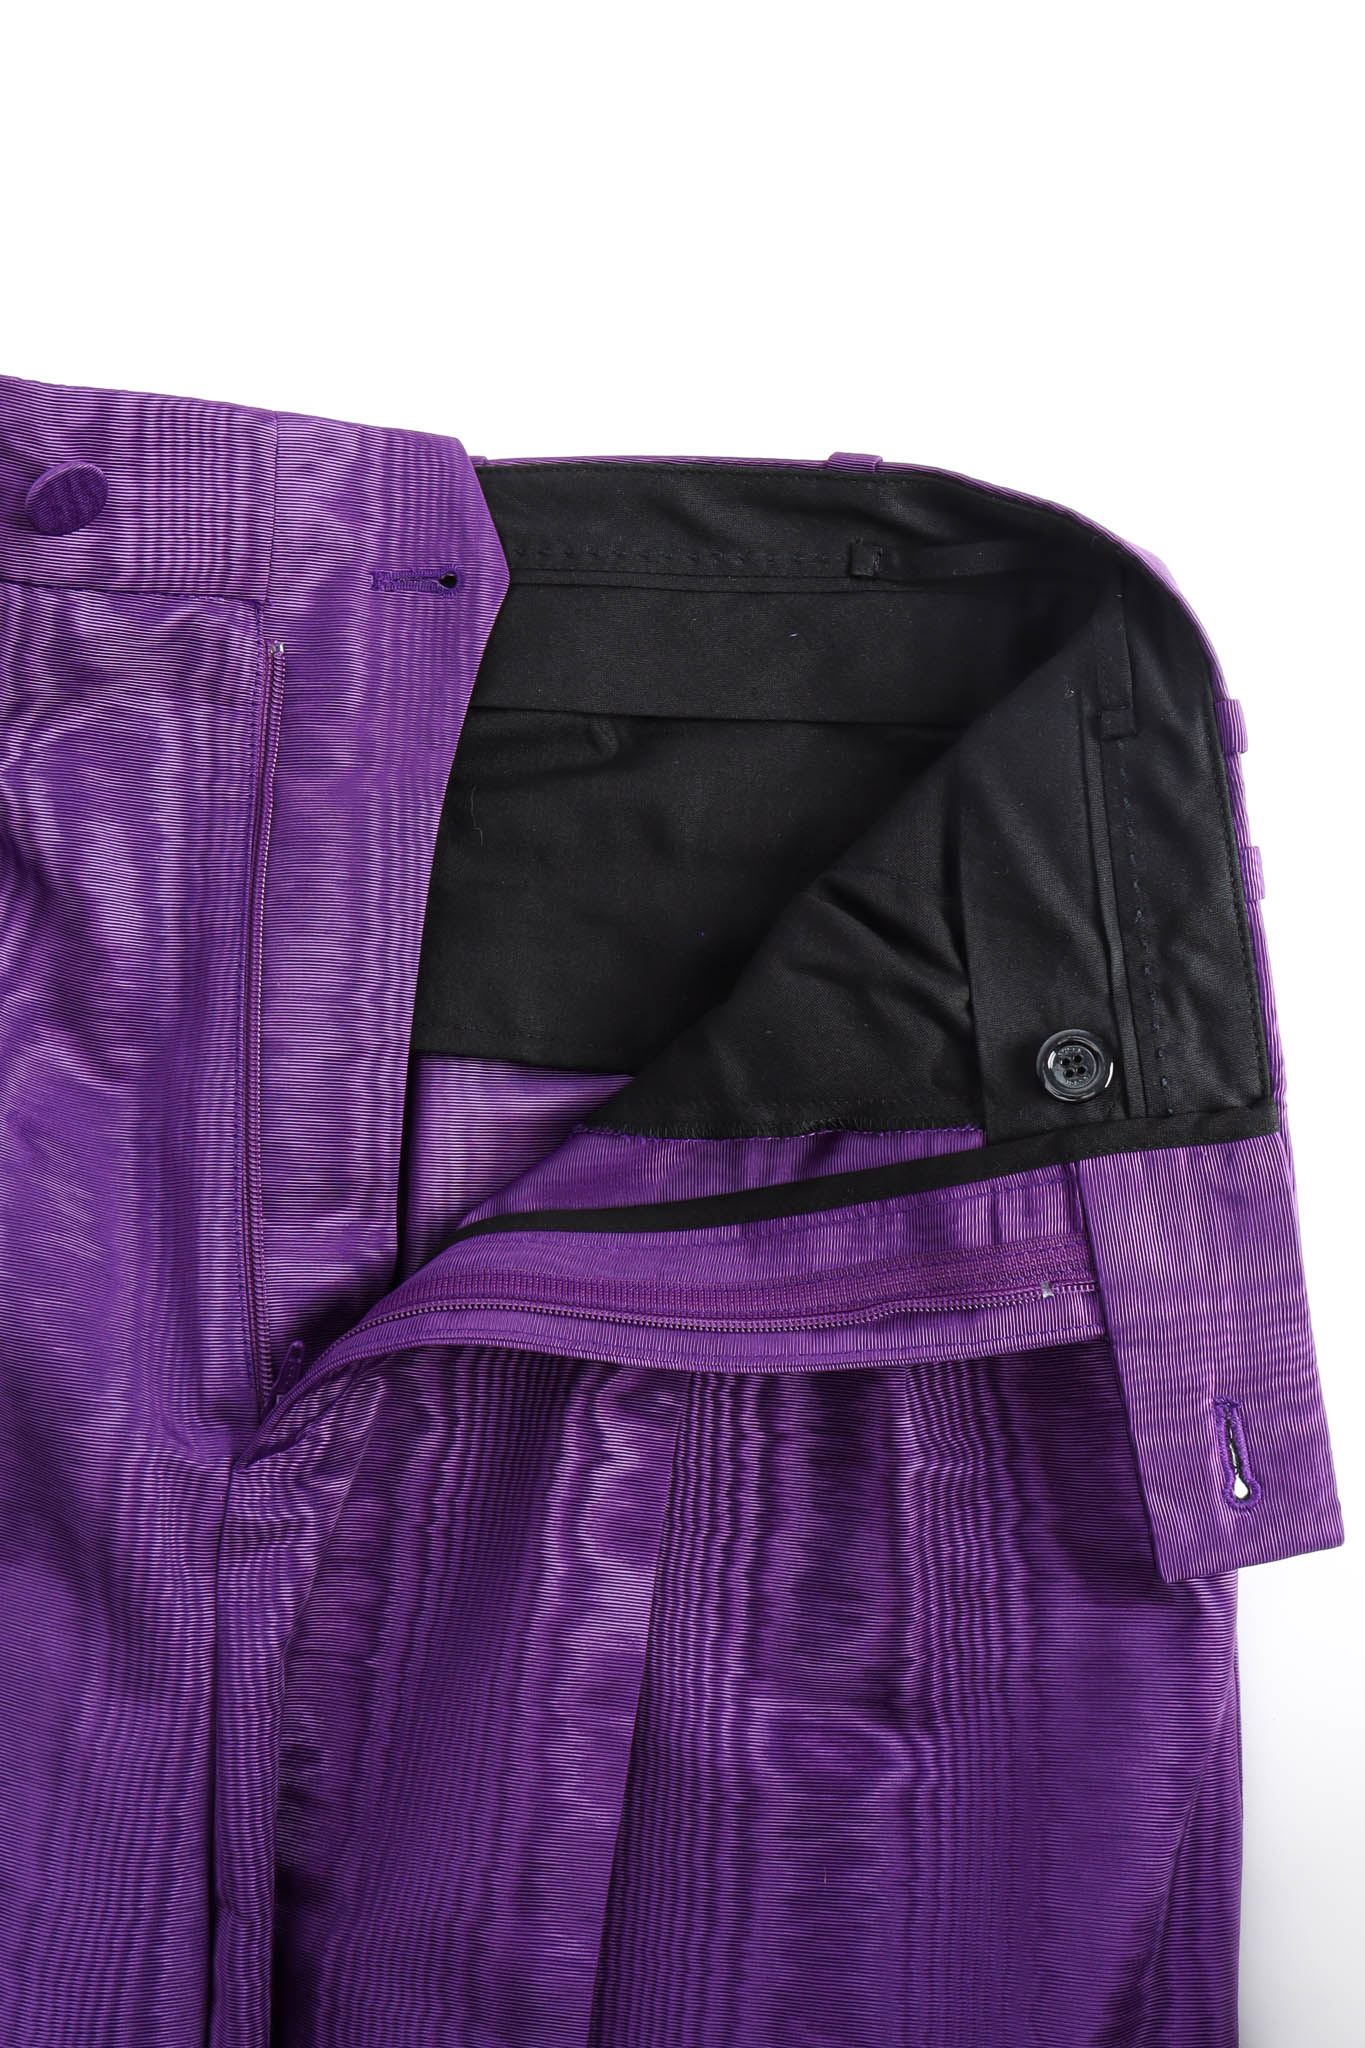 Vintage Gucci Wood Grain Print Trouser Pant button/zipper fly @ Recess Los Angeles